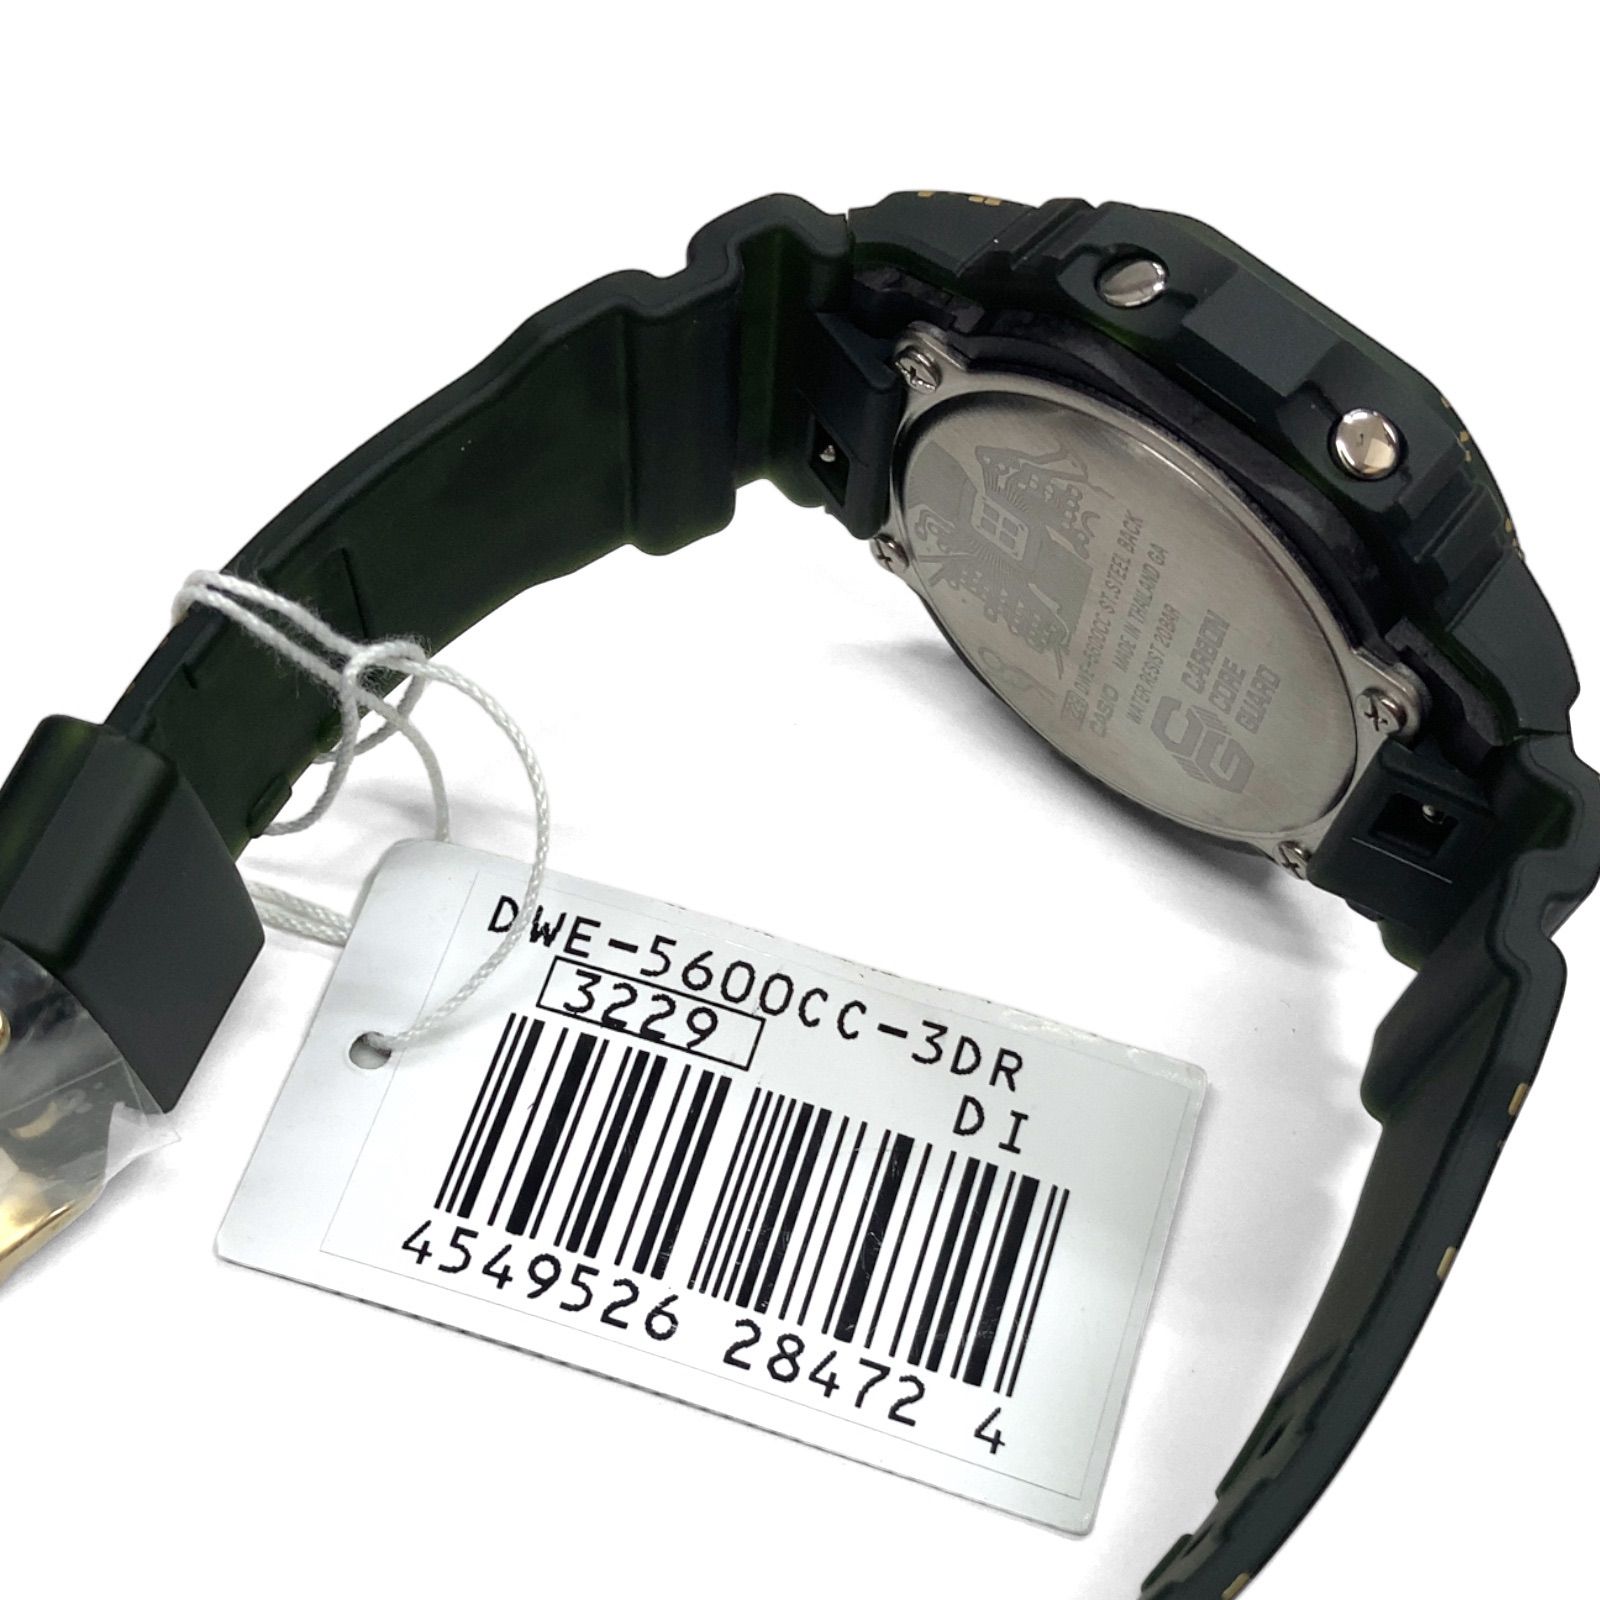 【未使用品】CASIO G-SHOCK カシオ カーボンコアガード構造 腕時計 ウォッチ デジタル DWE-5600CC-3JR